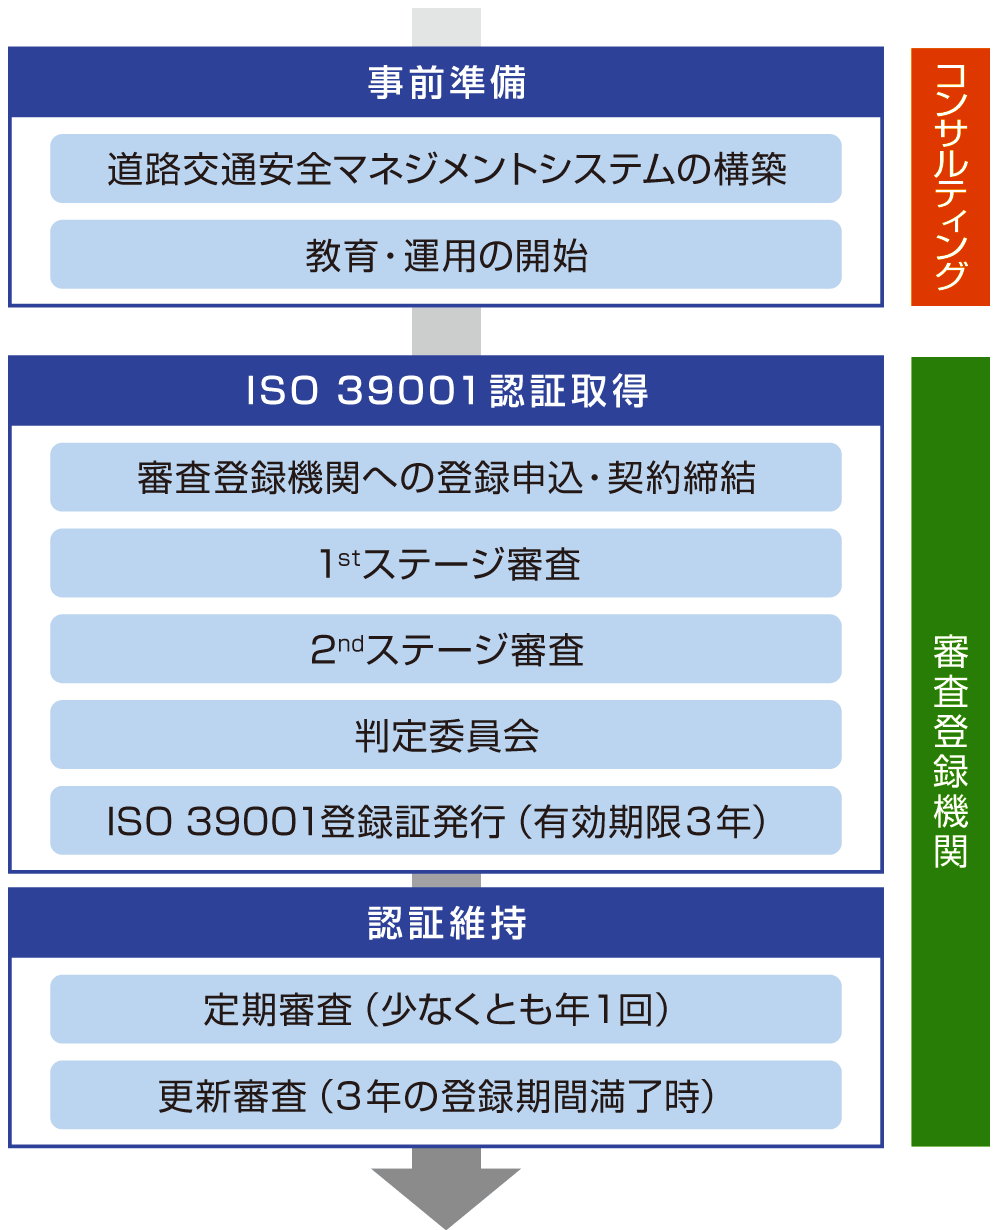 ISO39001の認定取得までの流れのイメージ